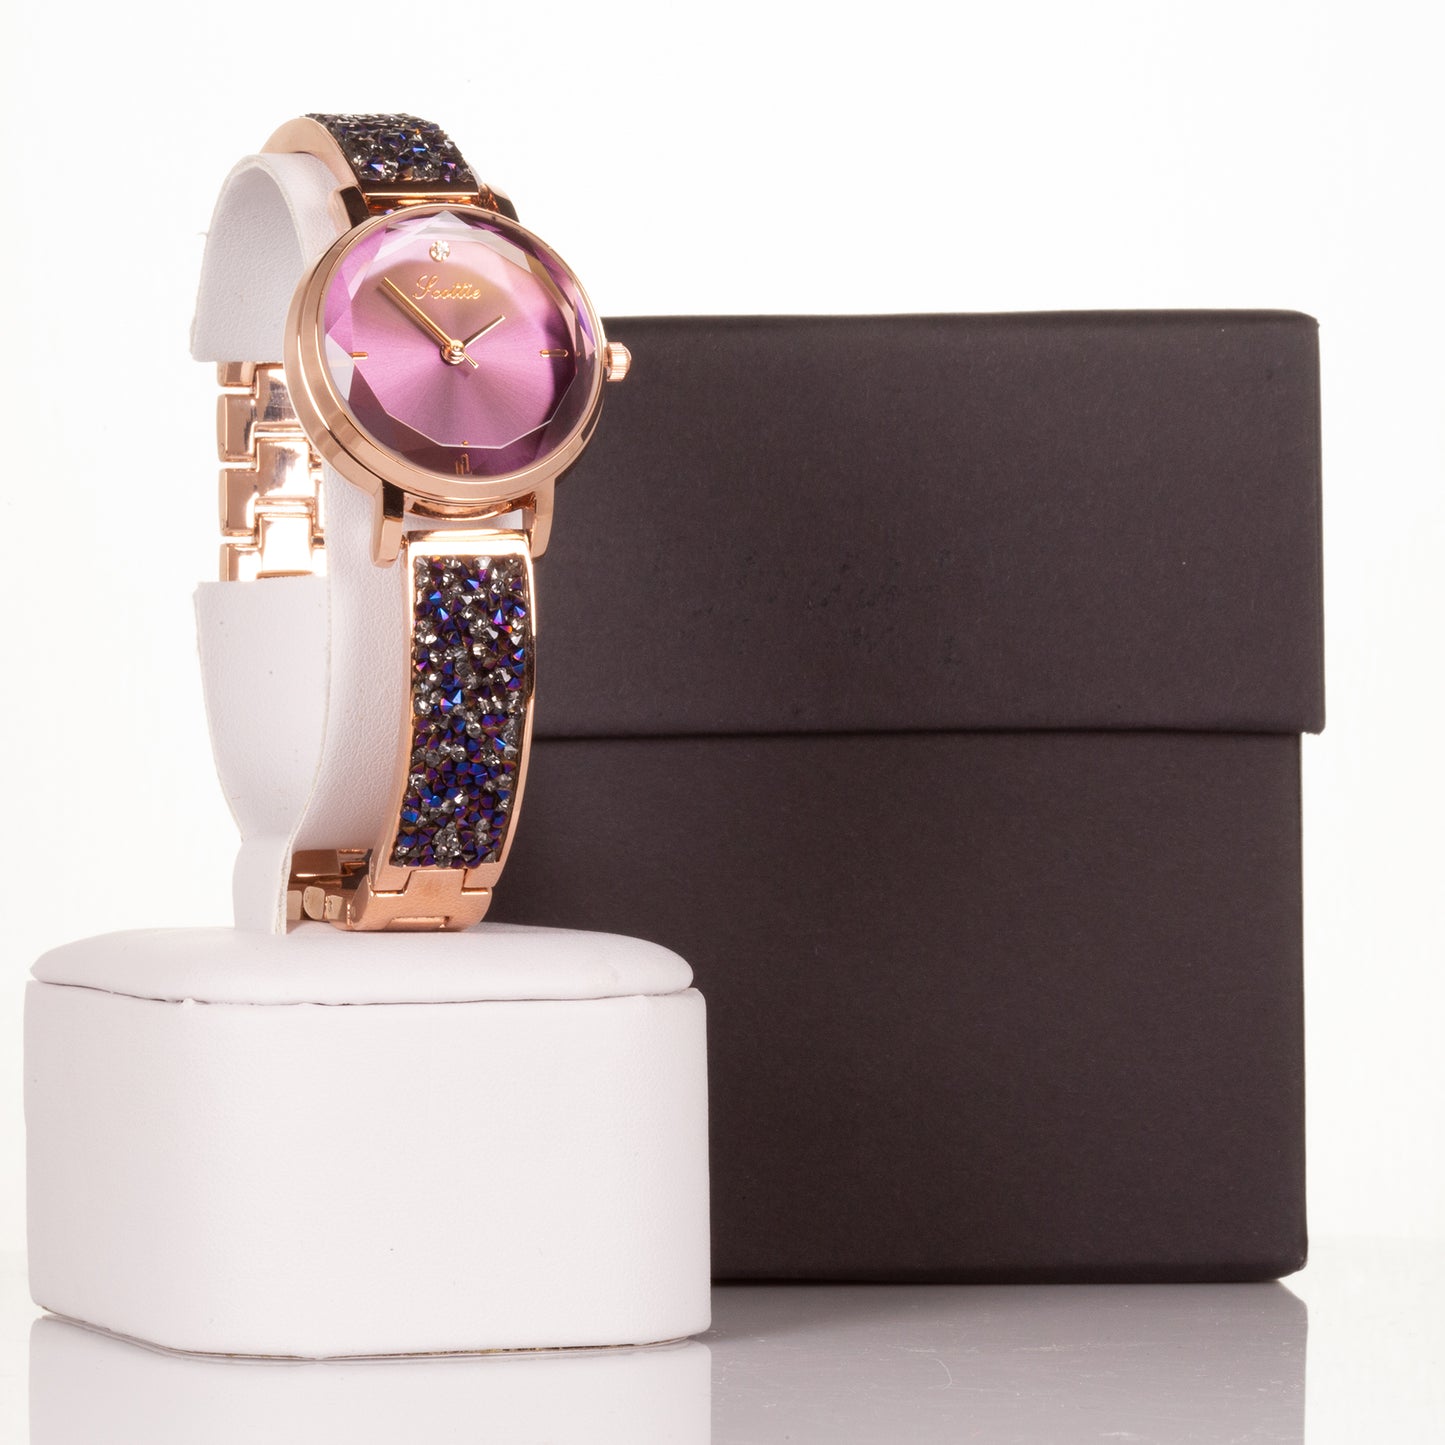 Wysokiej jakości zegarek ze stopu z mechanizmem Miyota i pudełkiem prezentowym, tarcza w kolorze fioletowym